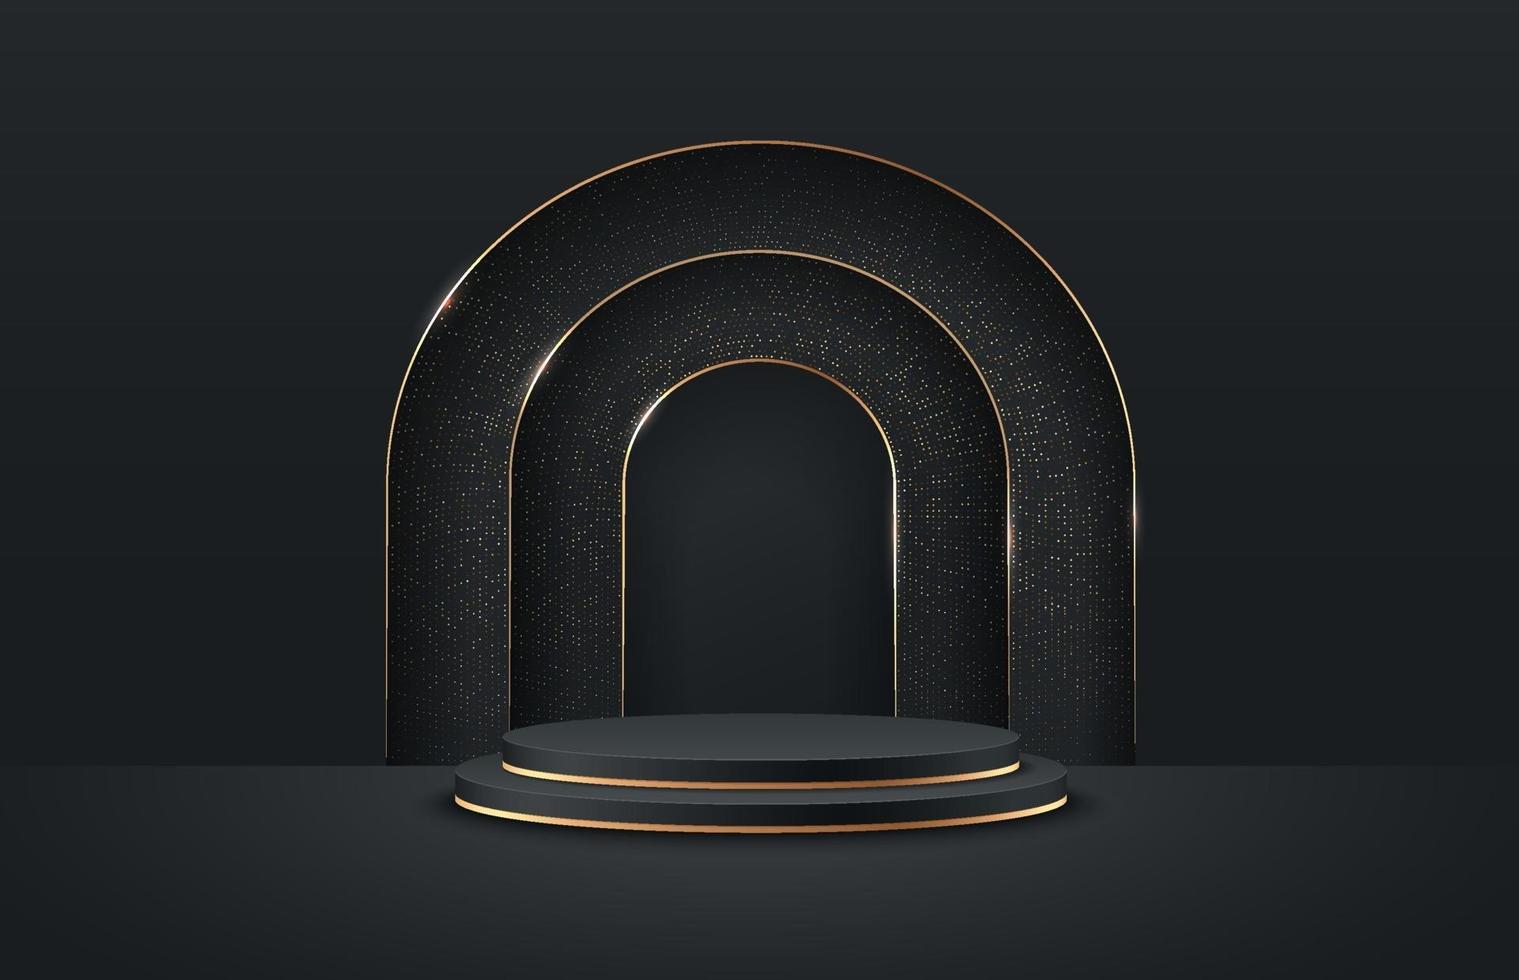 affichage rond abstrait pour produit sur site Web dans un style moderne. rendu de fond de luxe avec podium et scène de mur de texture minimaliste noir et or, rendu 3D couleur noire de forme géométrique. vecteur eps10